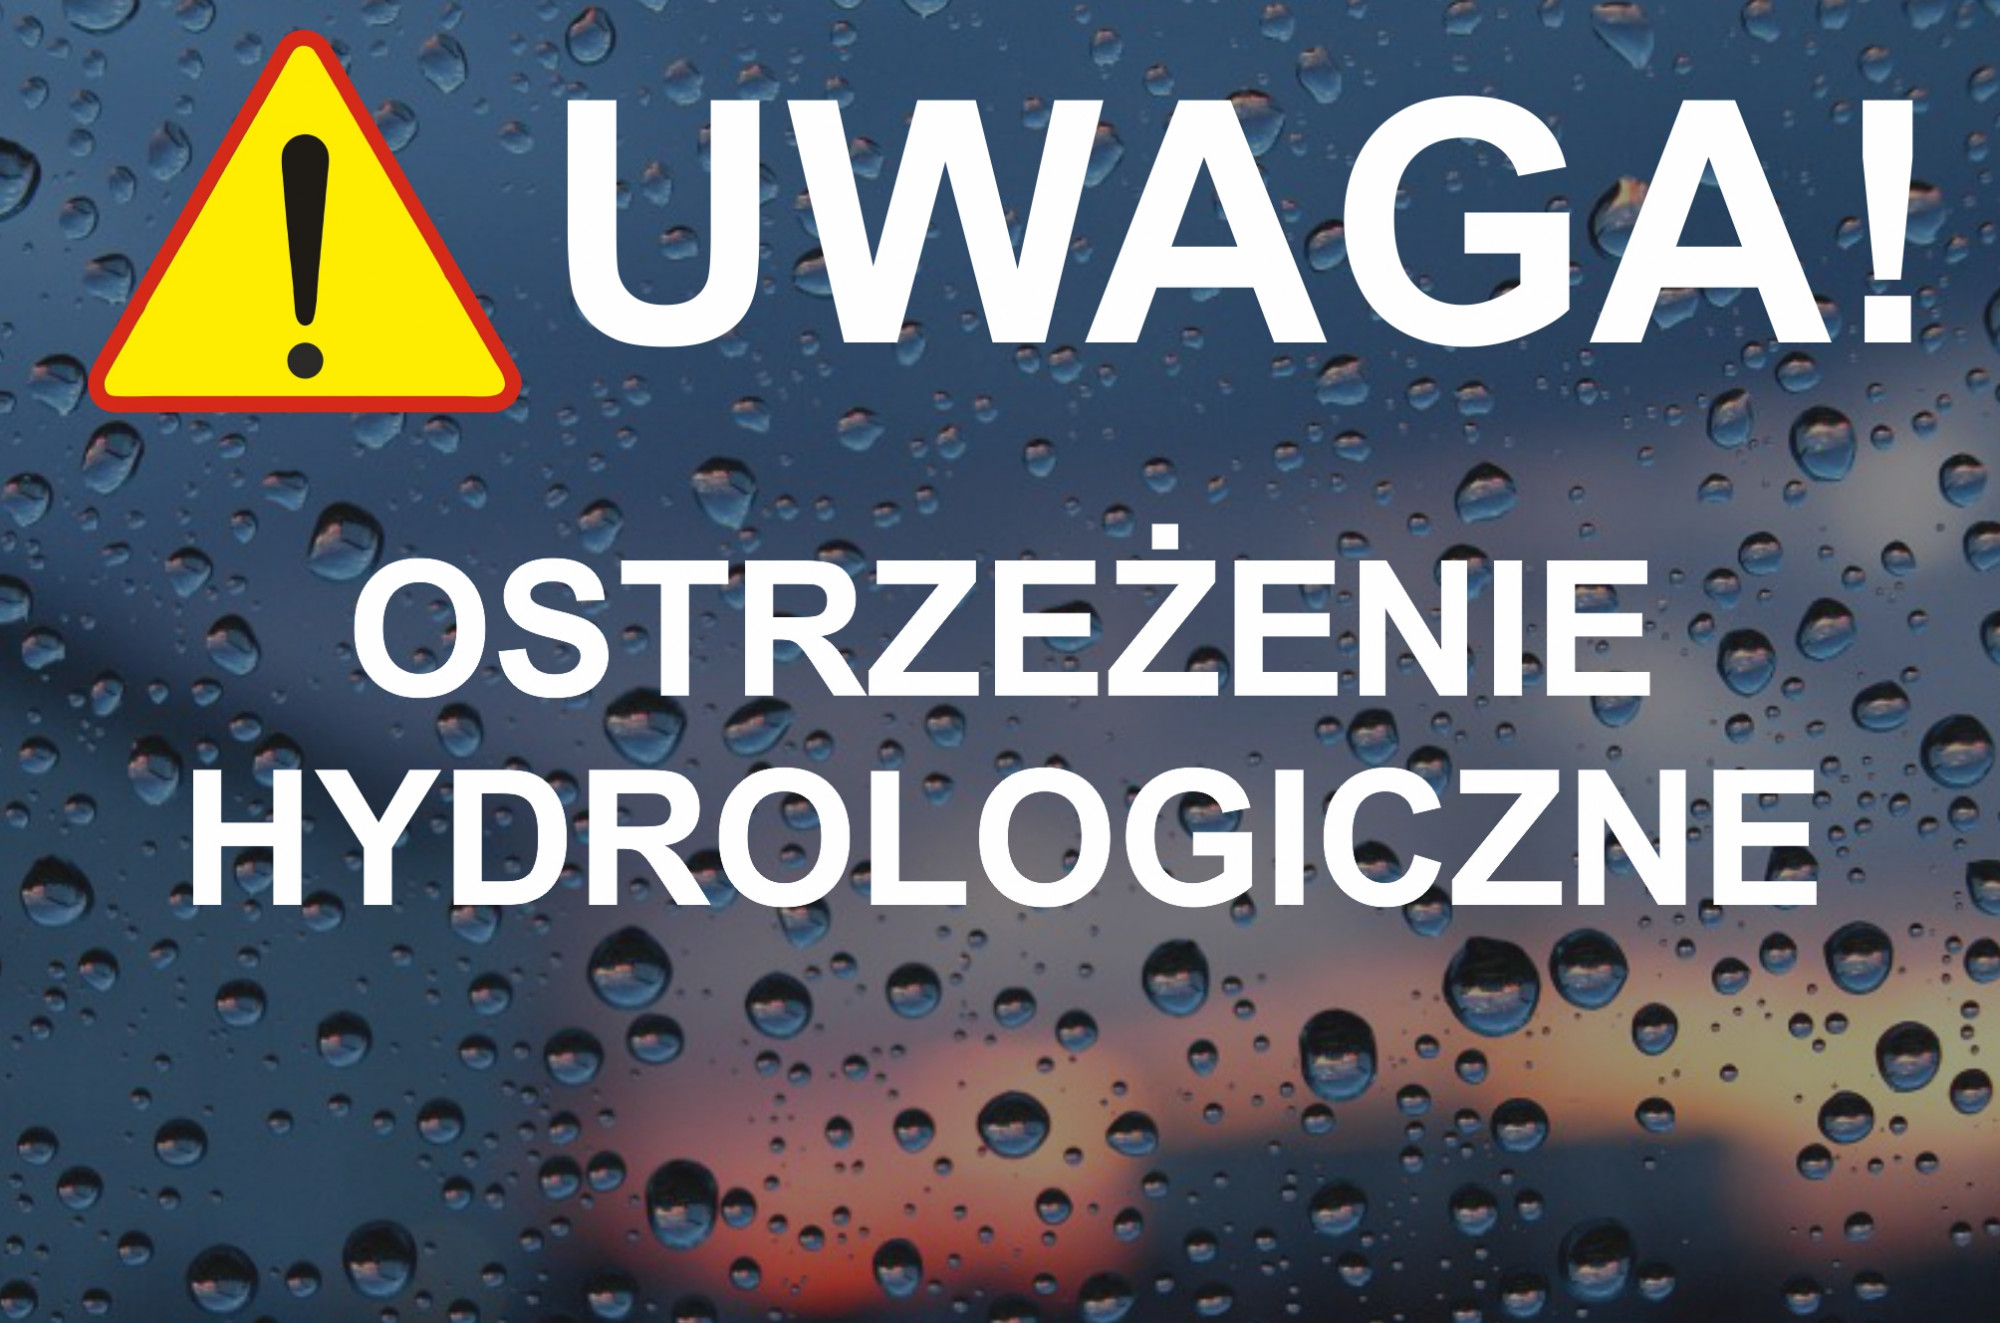 Ostrzeżenie hydrologiczne - 19.07.2021